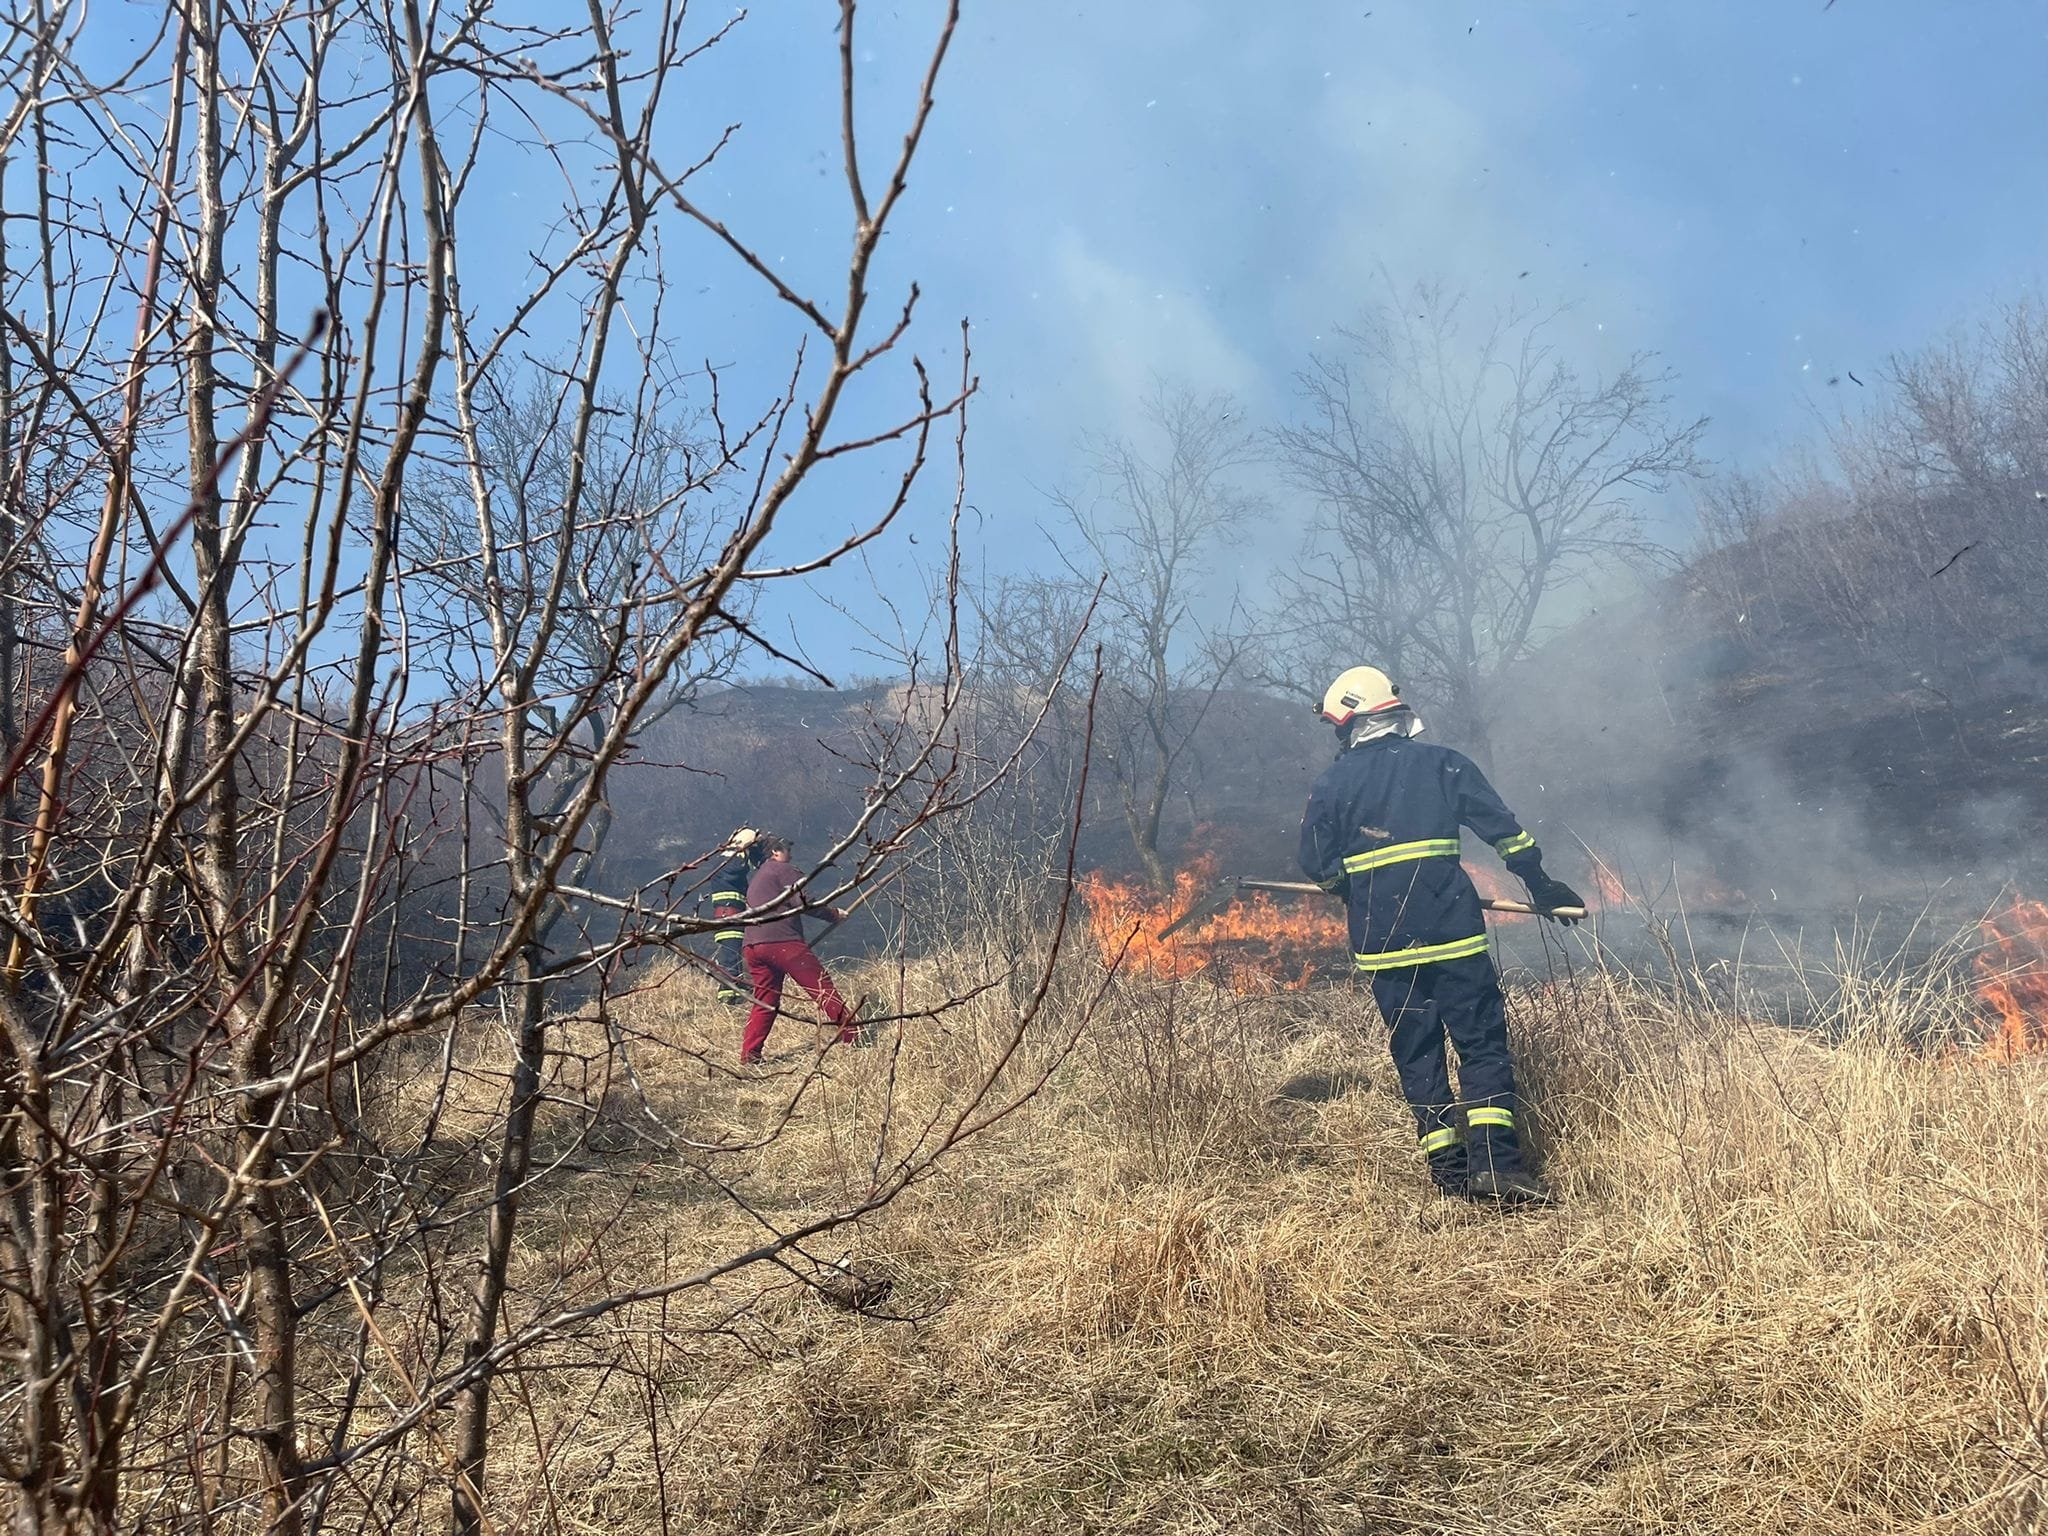  Zeci de hectare de pădure au fost arse în Sihlea, judeţul Vrancea, arse din cauza unui incendiu